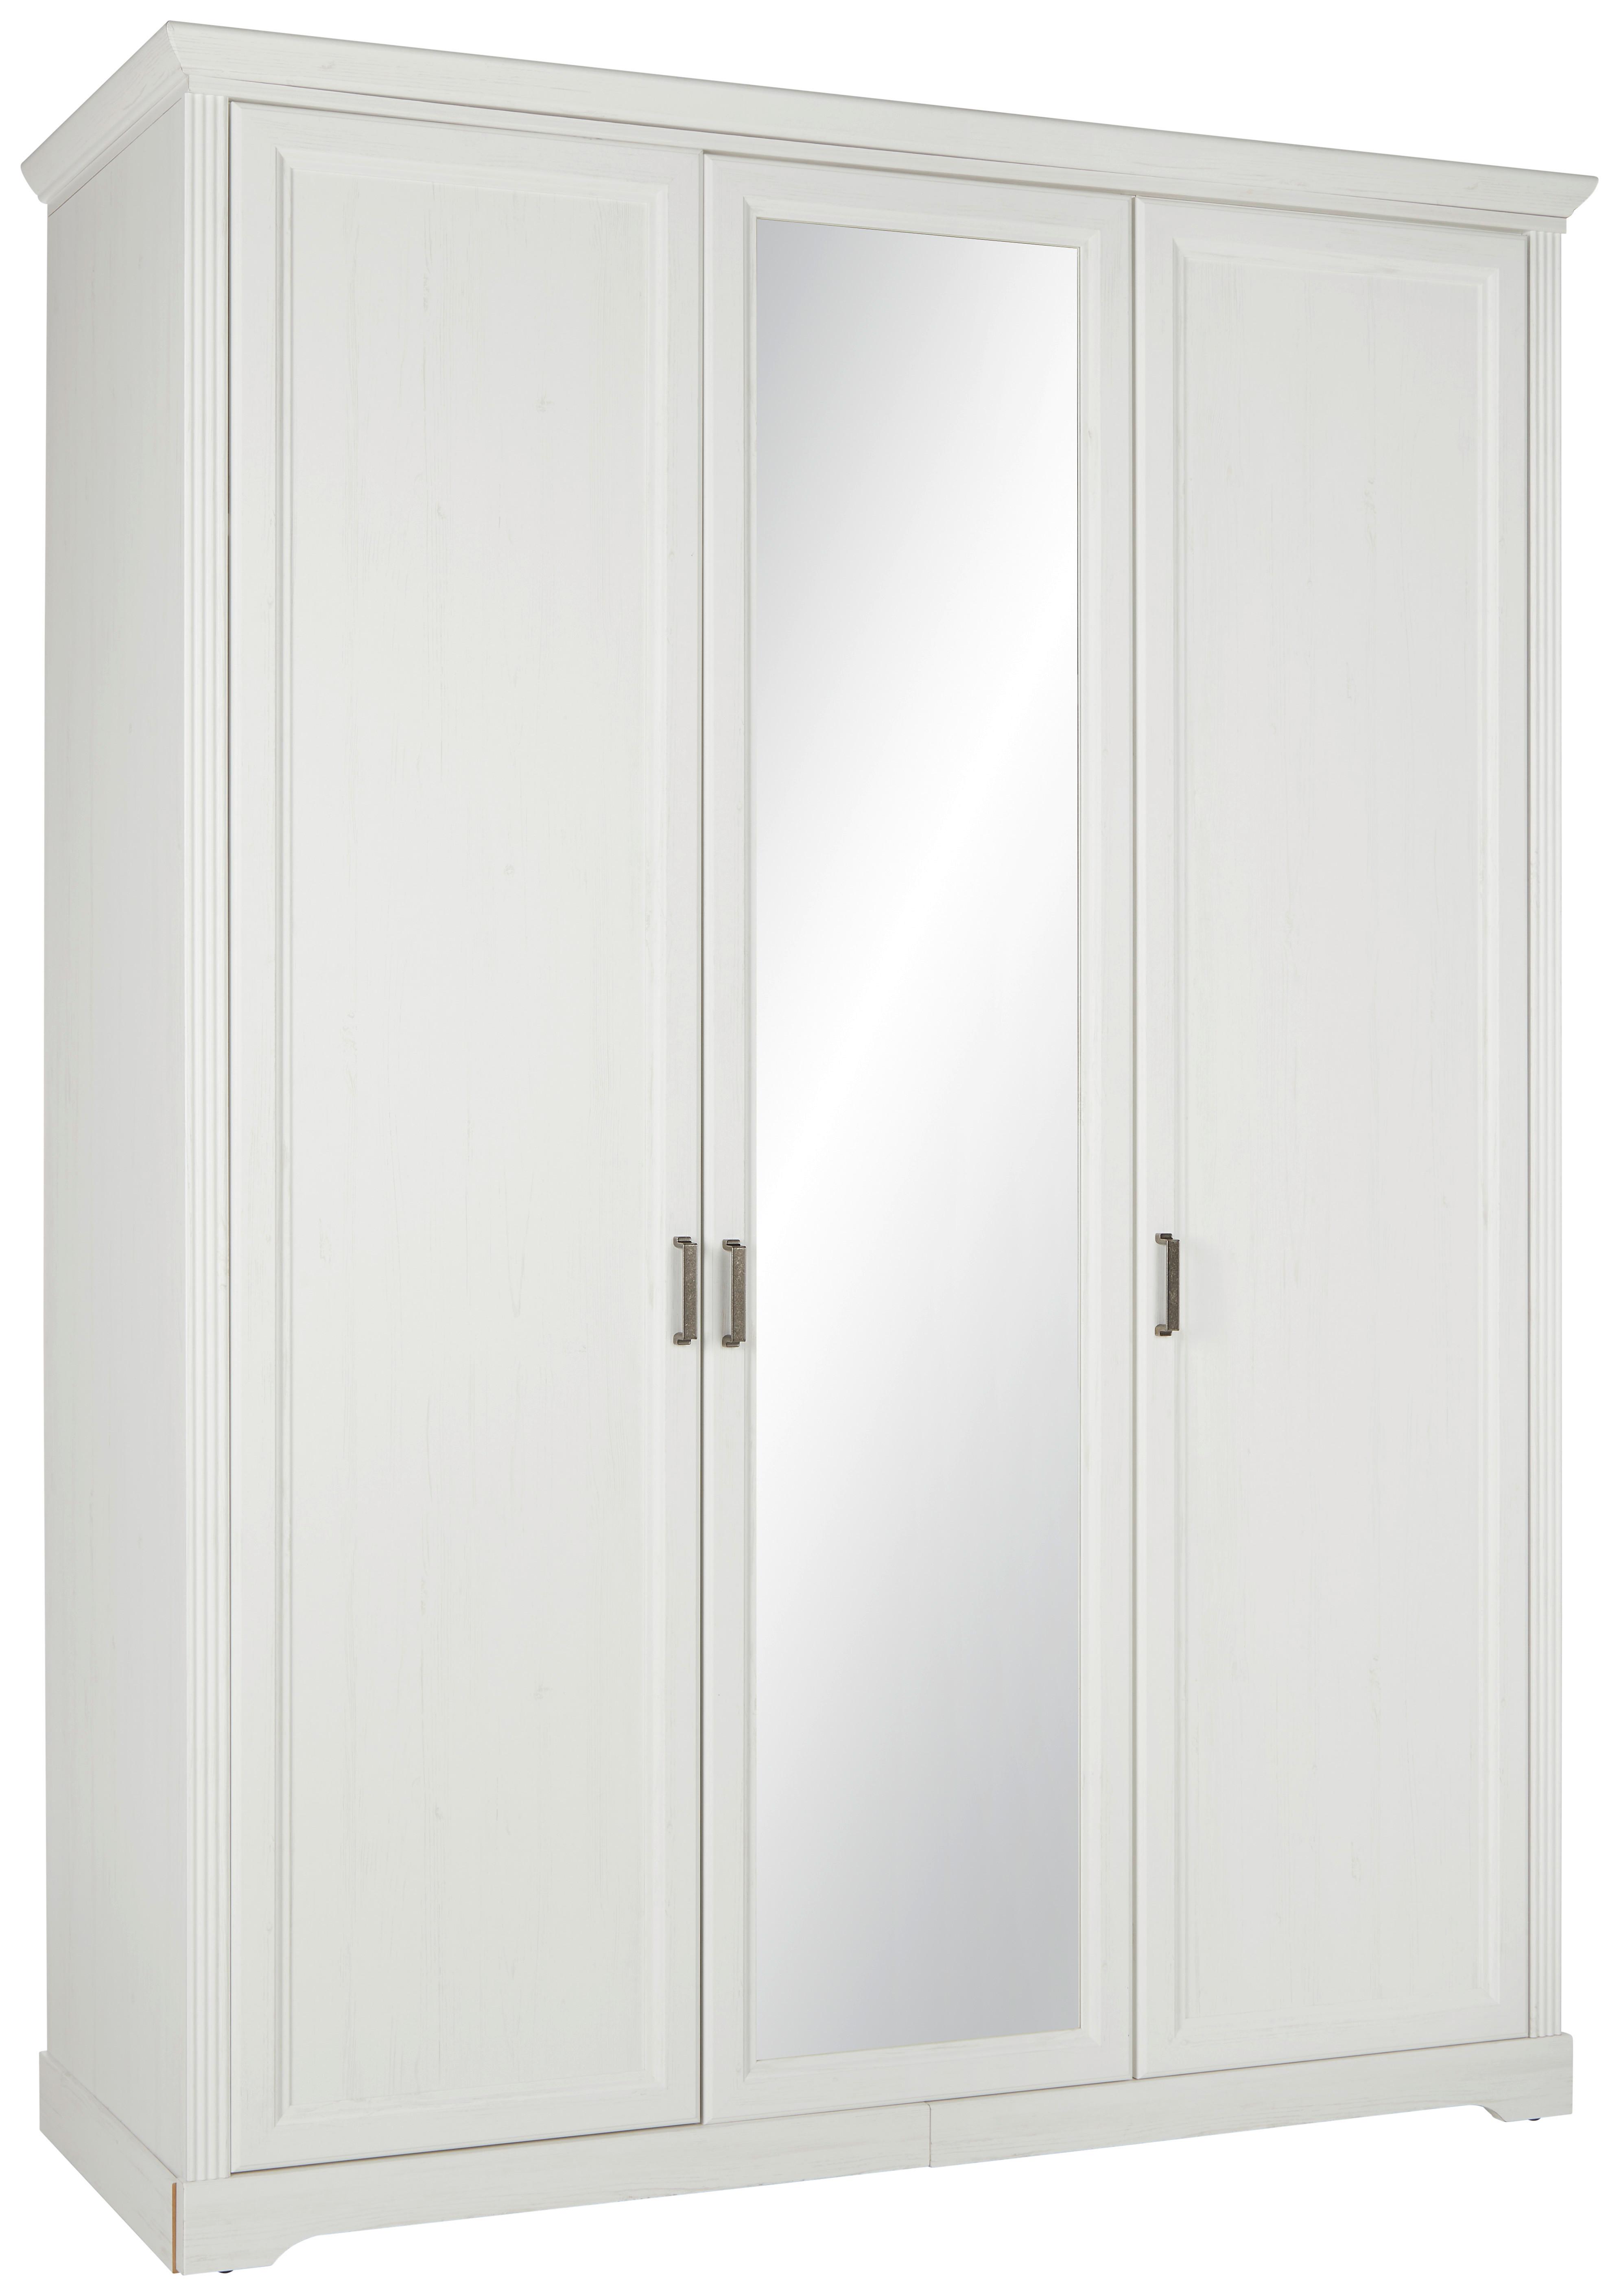 Skříň Bílá,š. 160cm - bílá/barvy niklu, Romantický / Rustikální, kov/kompozitní dřevo (160/220/64cm)